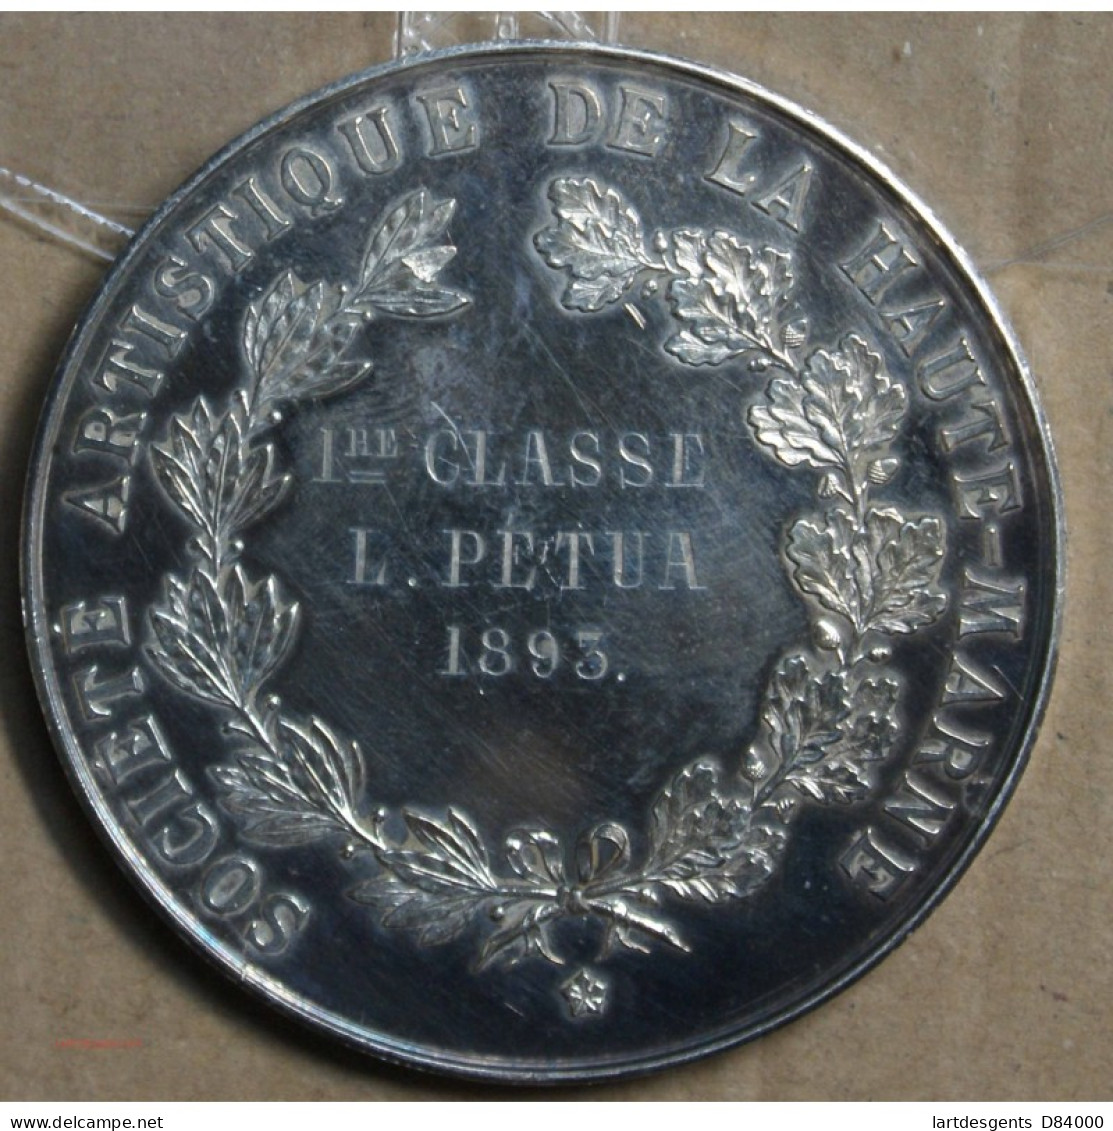 Médaille Argent "Société Artistique De La Haute Marne" Attribué à Pétua 1893 (22), Lartdesgents.fr - Royaux / De Noblesse